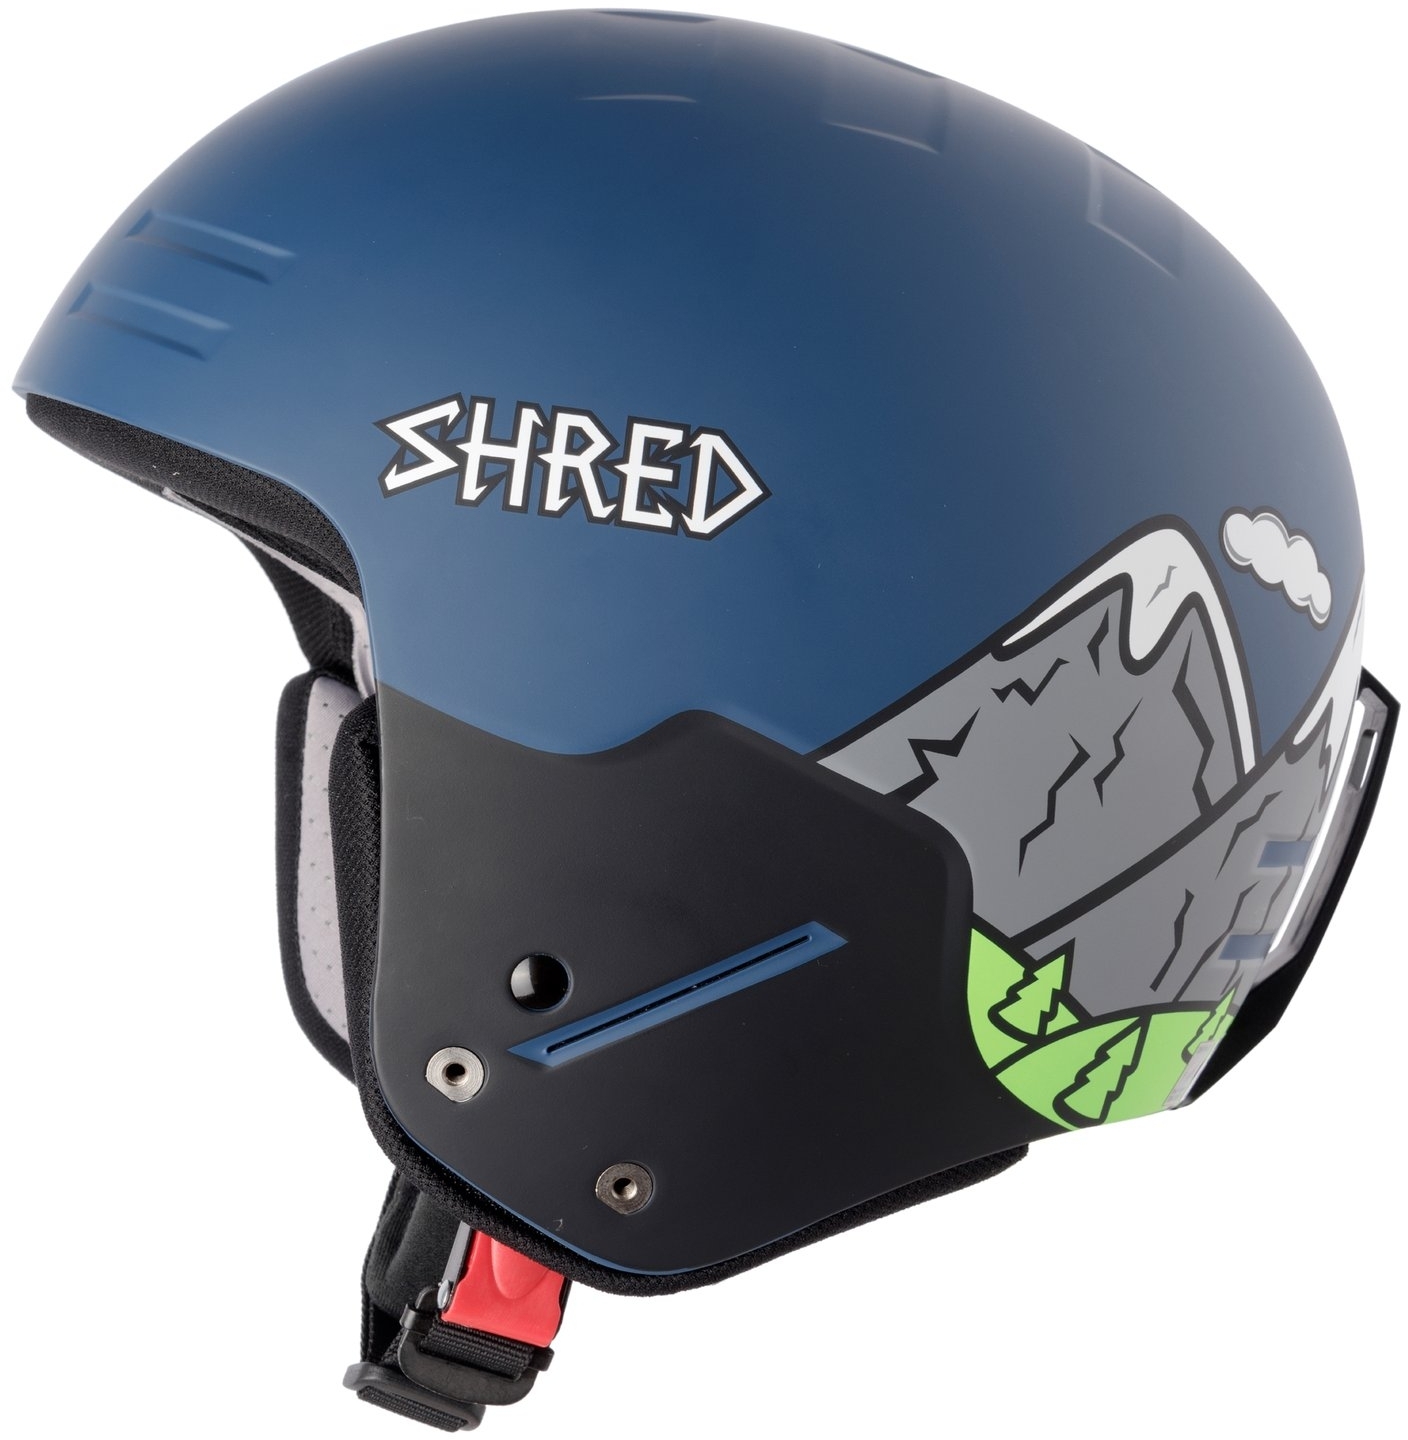 Купить горнолыжный шлем в москве. Shred шлем горнолыжный. Шлем горнолыжный Fis head. Шлем Shred Slam-cap Noshock. Шлем Shred Basher Eclipse Fis rh Black.